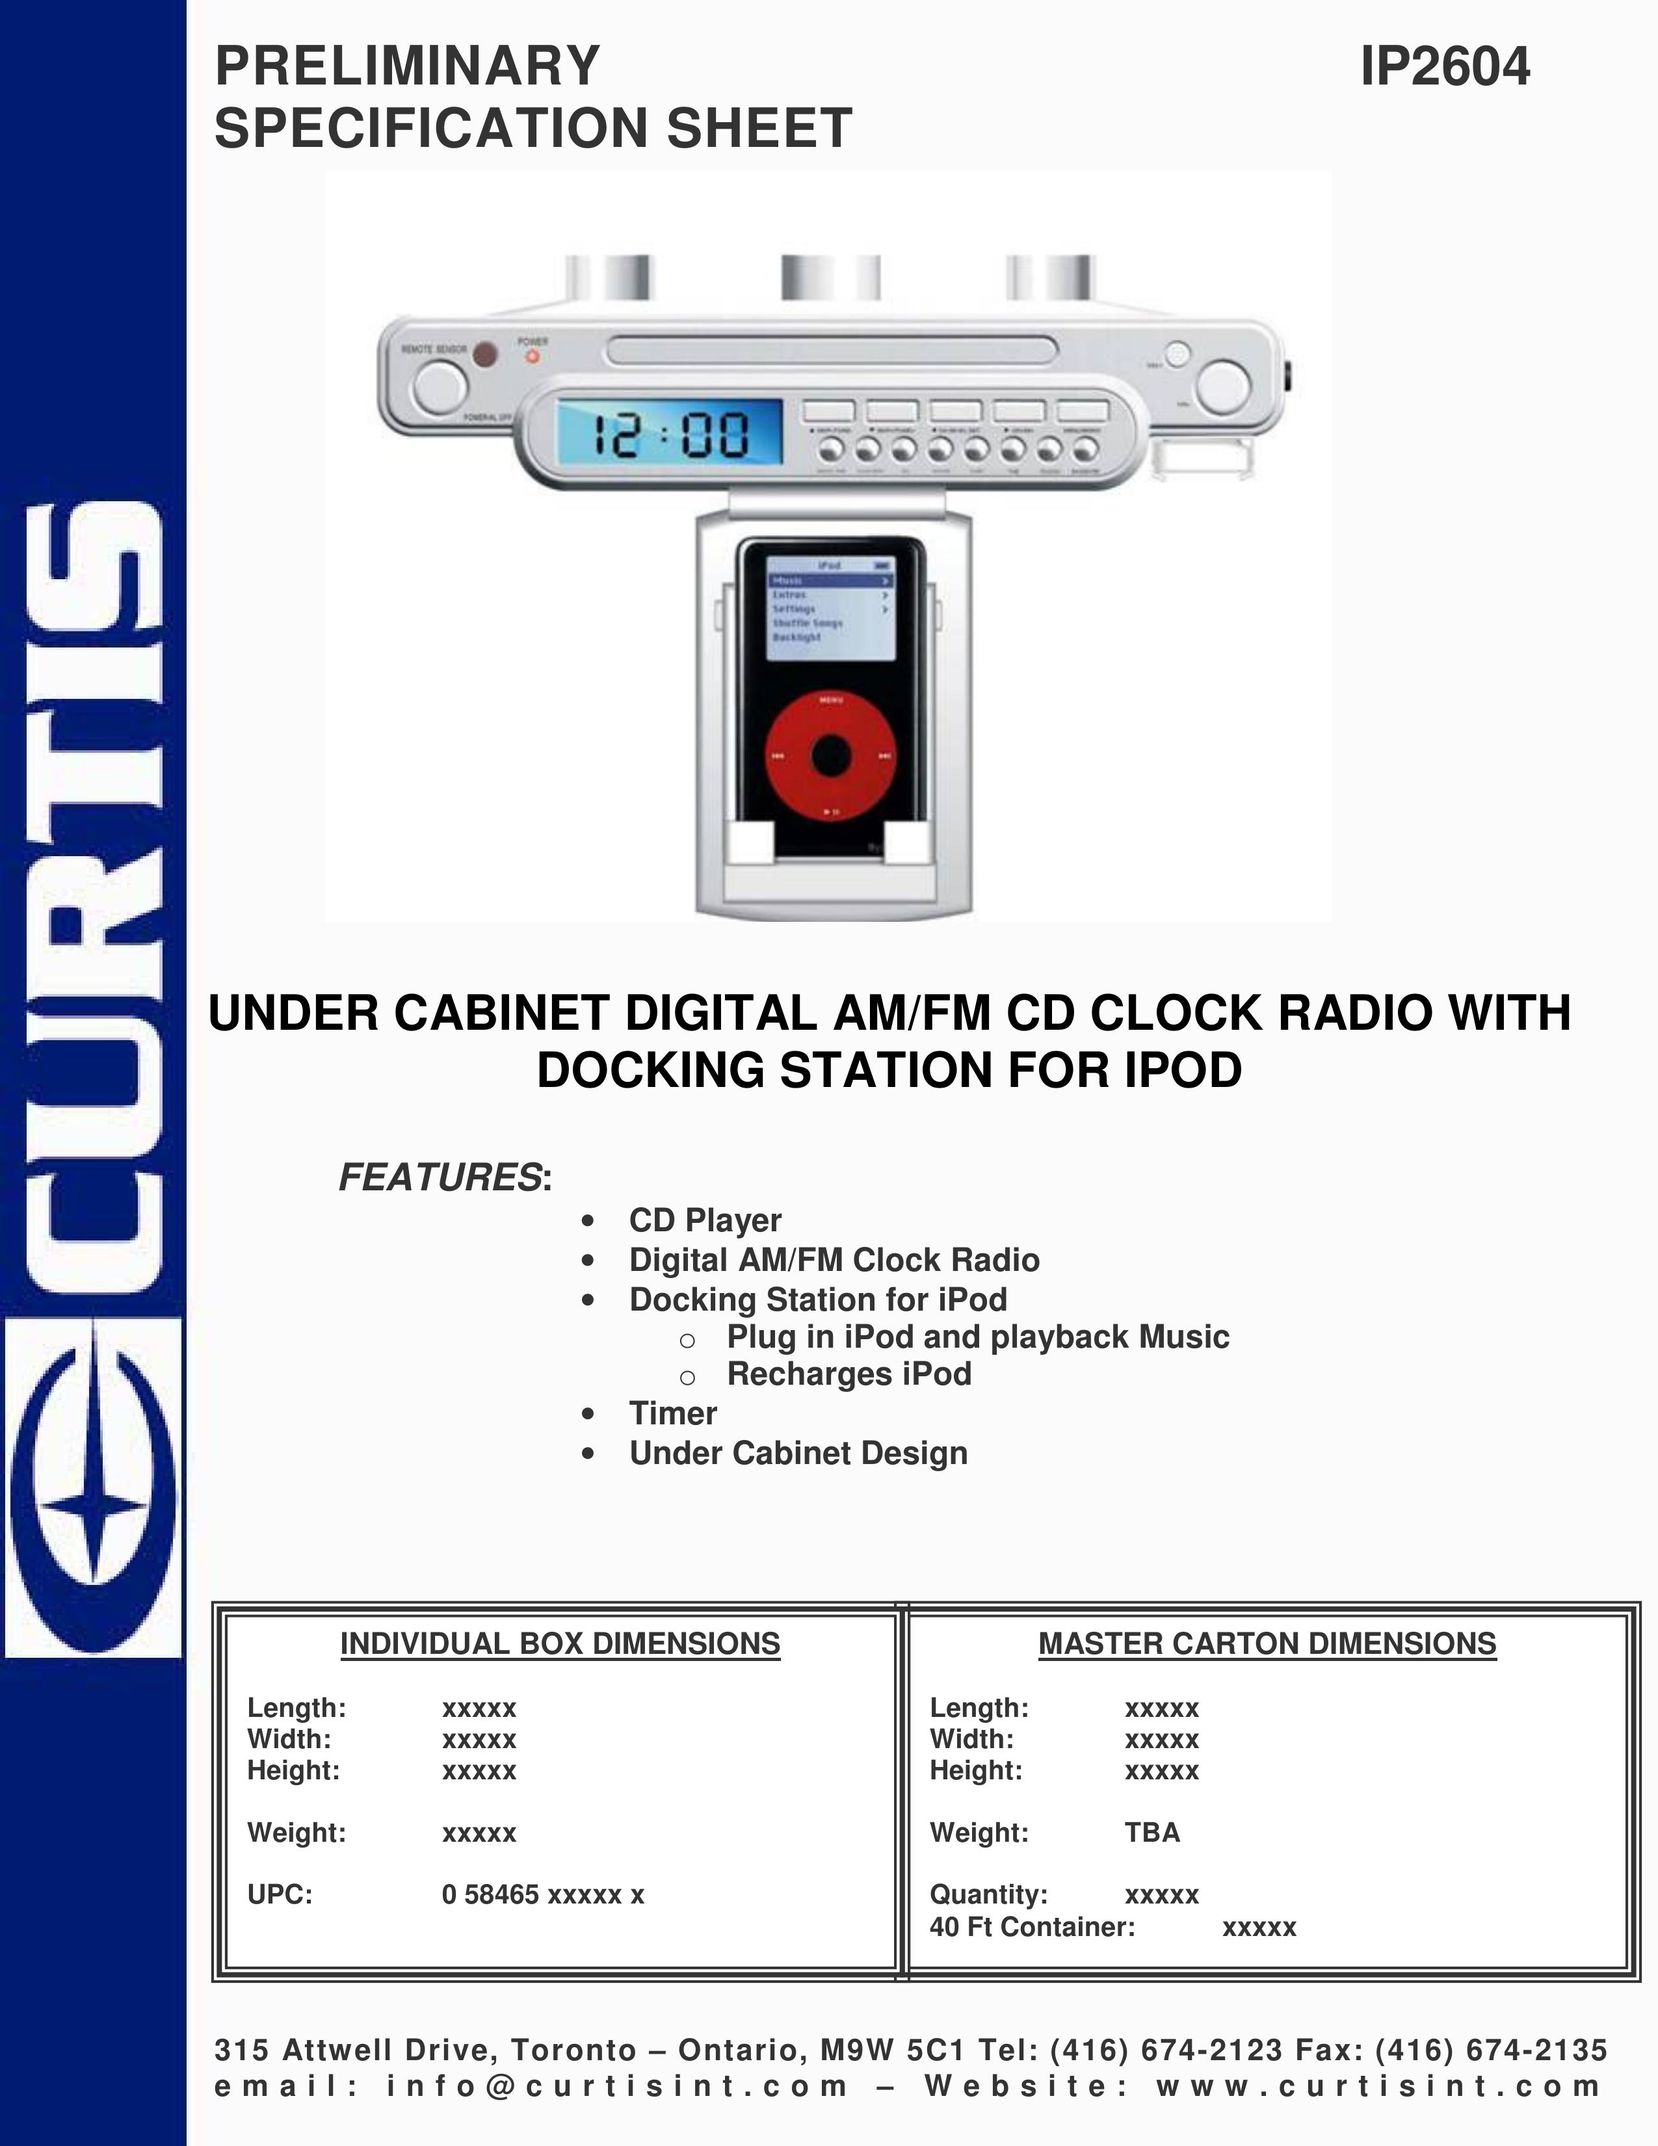 Curtis IP2604 MP3 Docking Station User Manual